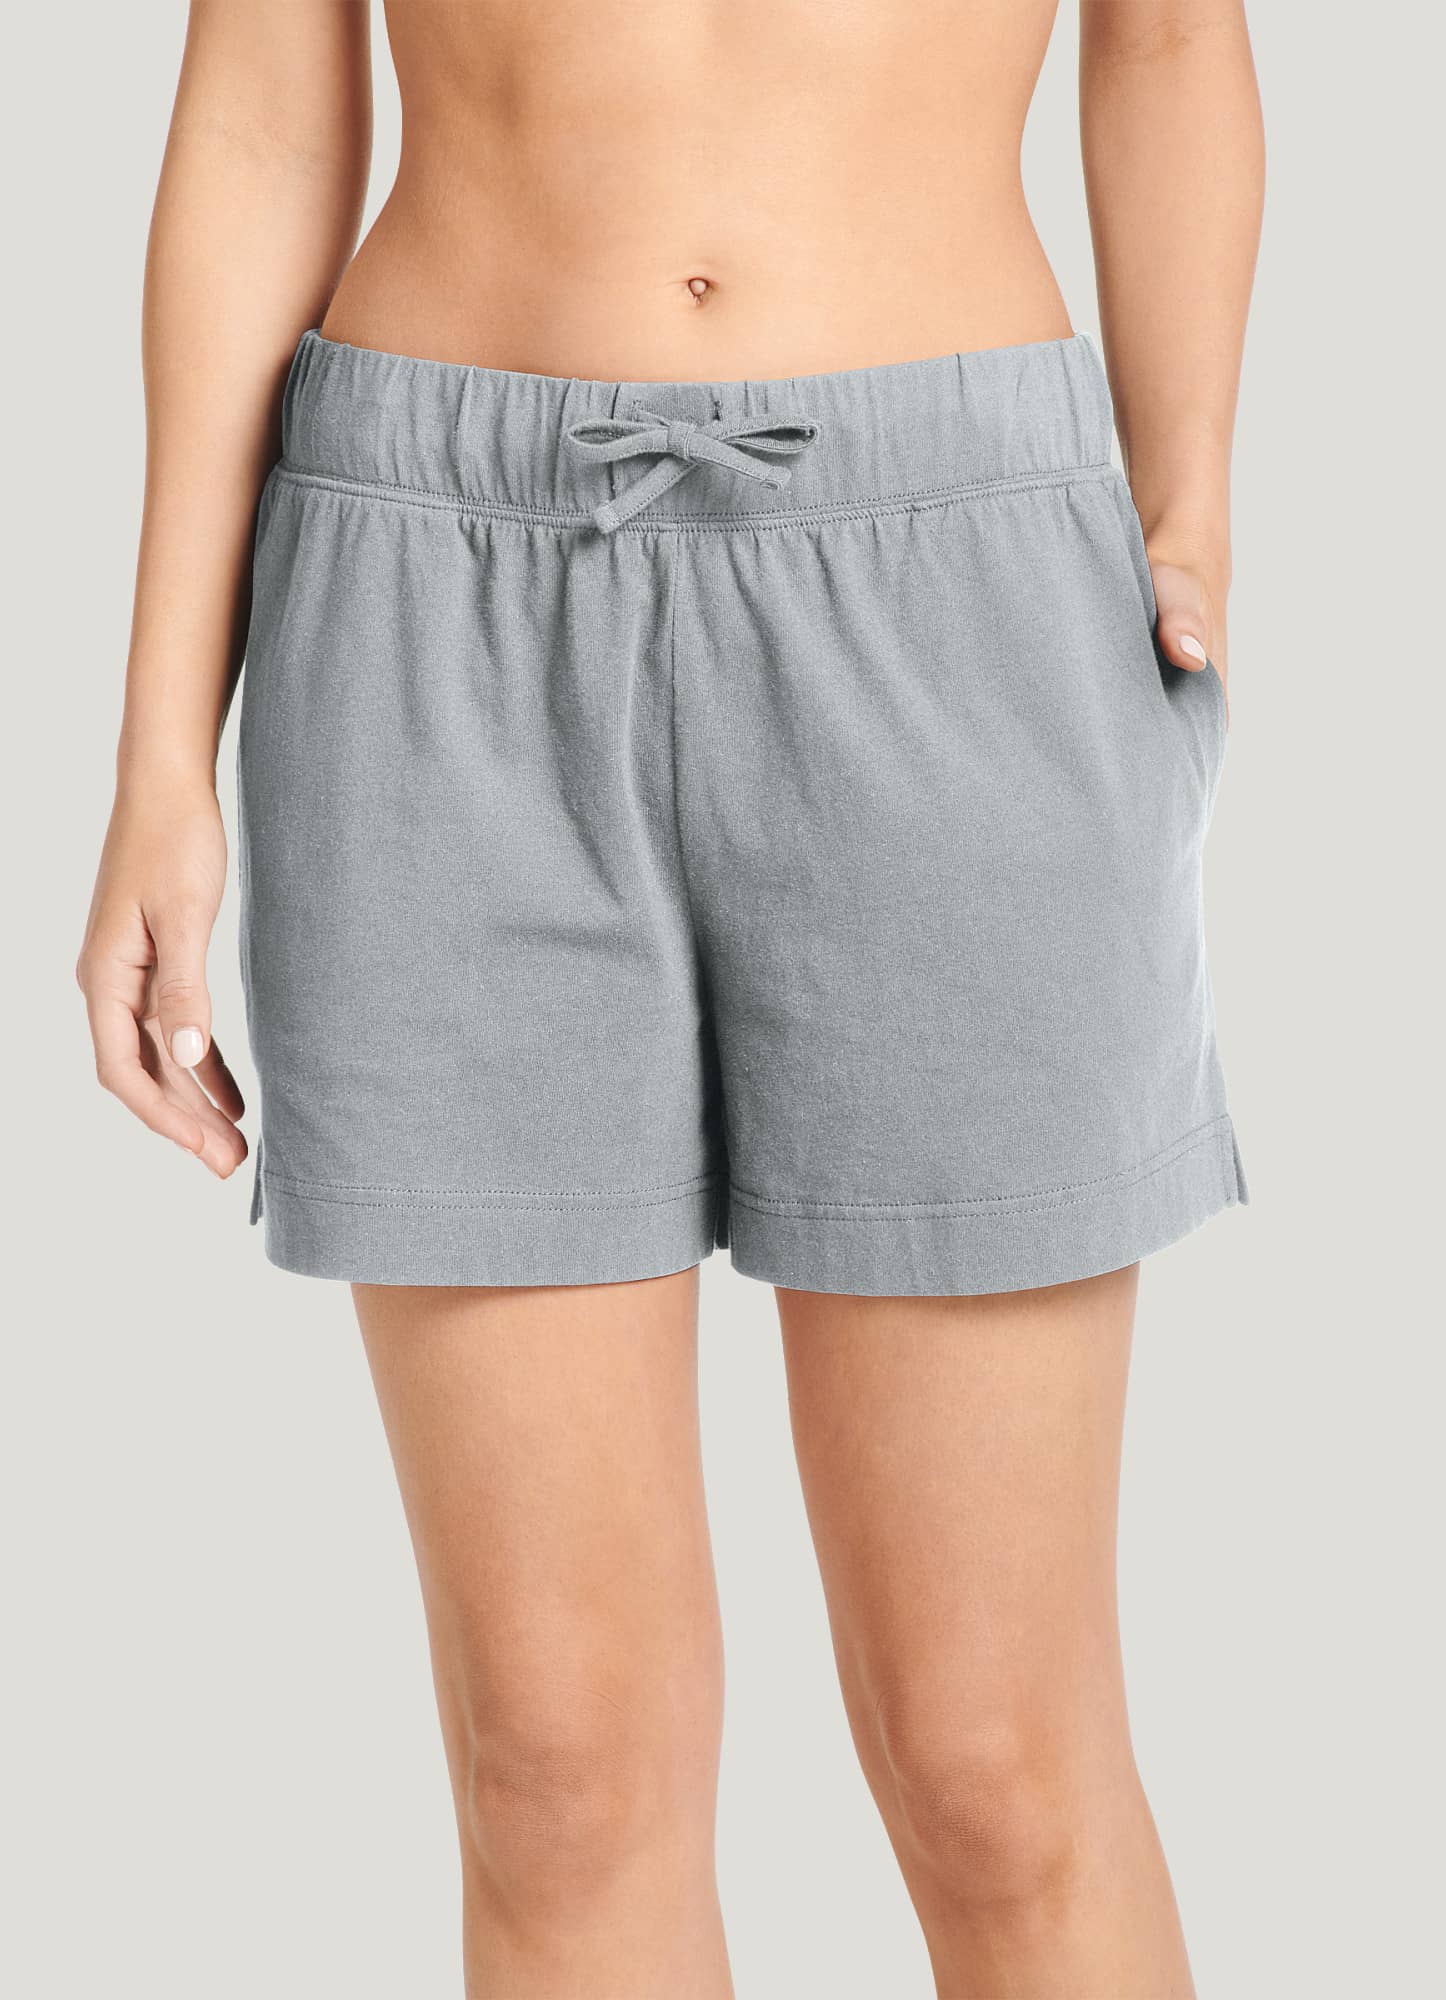 Underwear Turn-down Collar Summer Shorts Cotton Women's Sleep